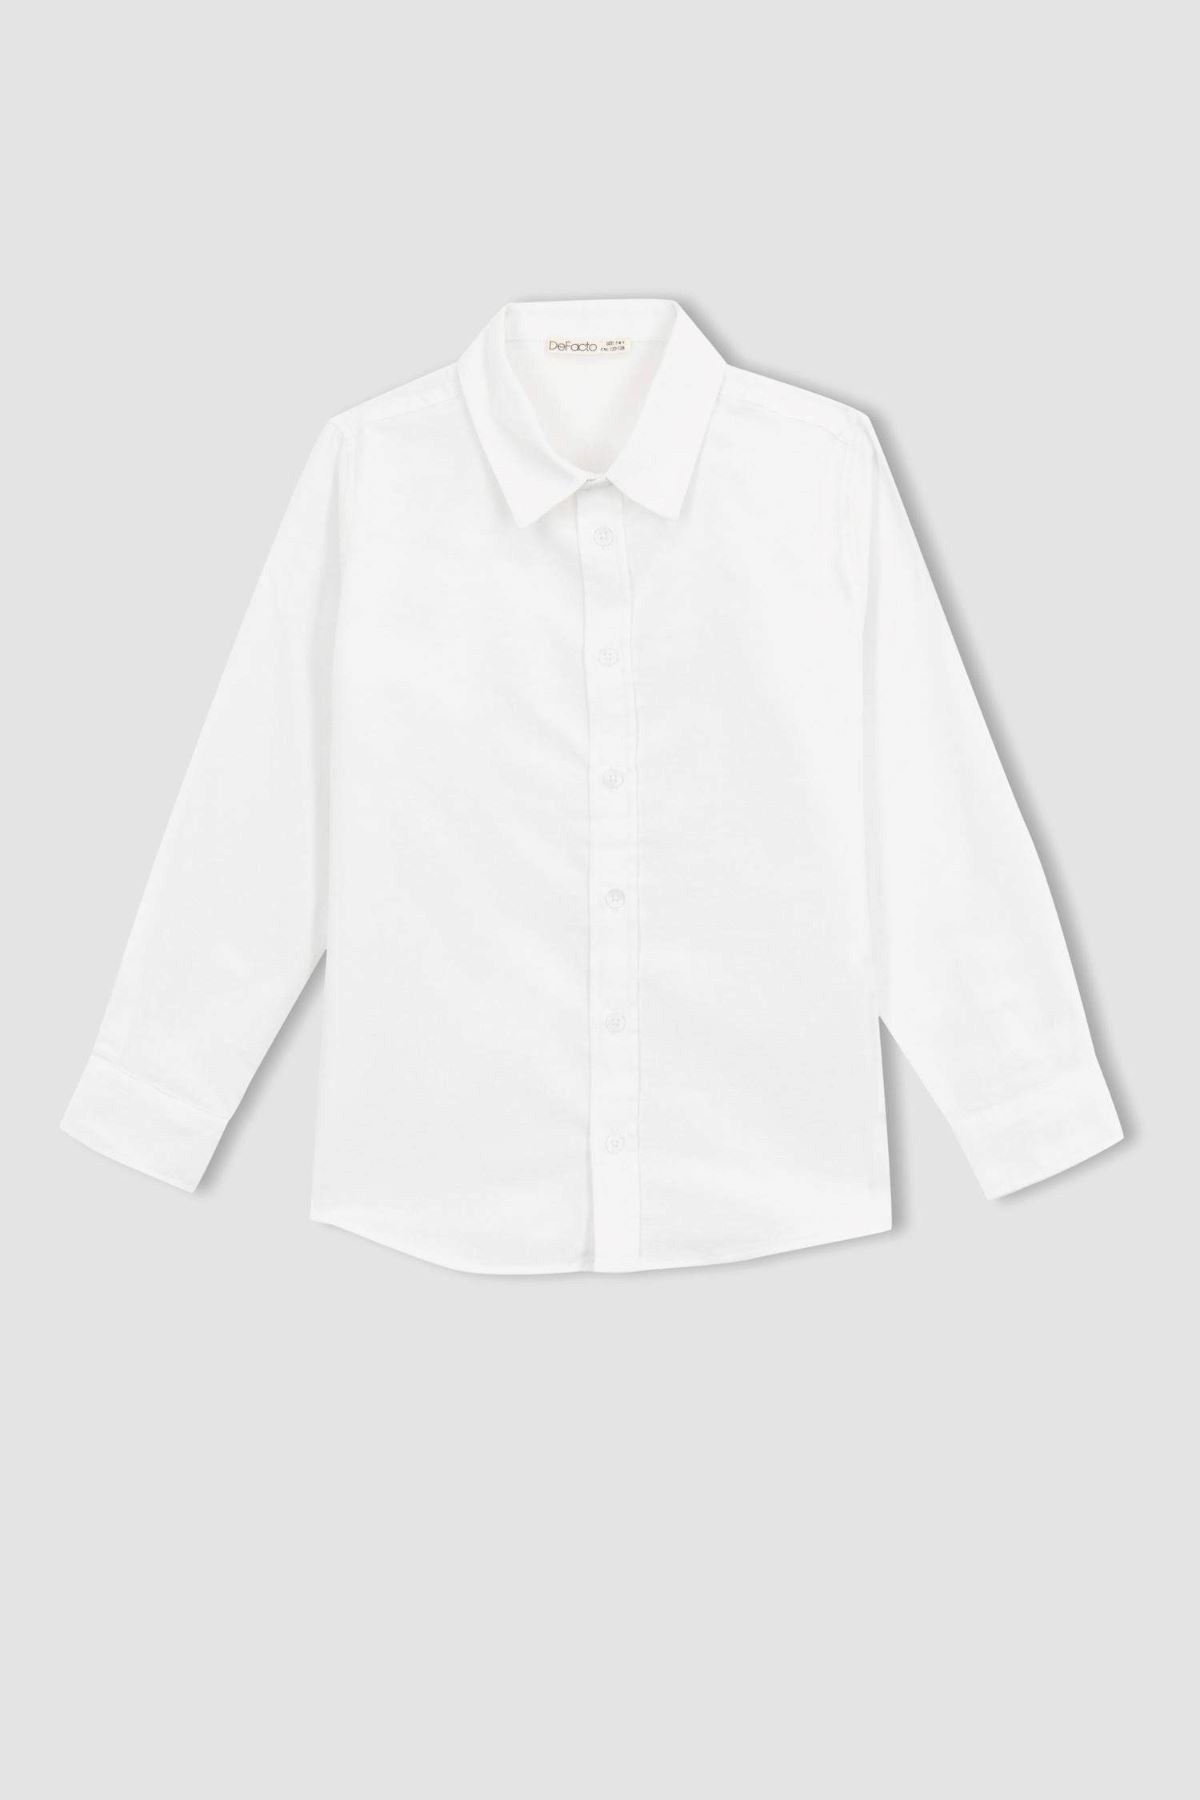 Defacto Erkek Çocuk Beyaz Gömlek - W3215A6/WT34